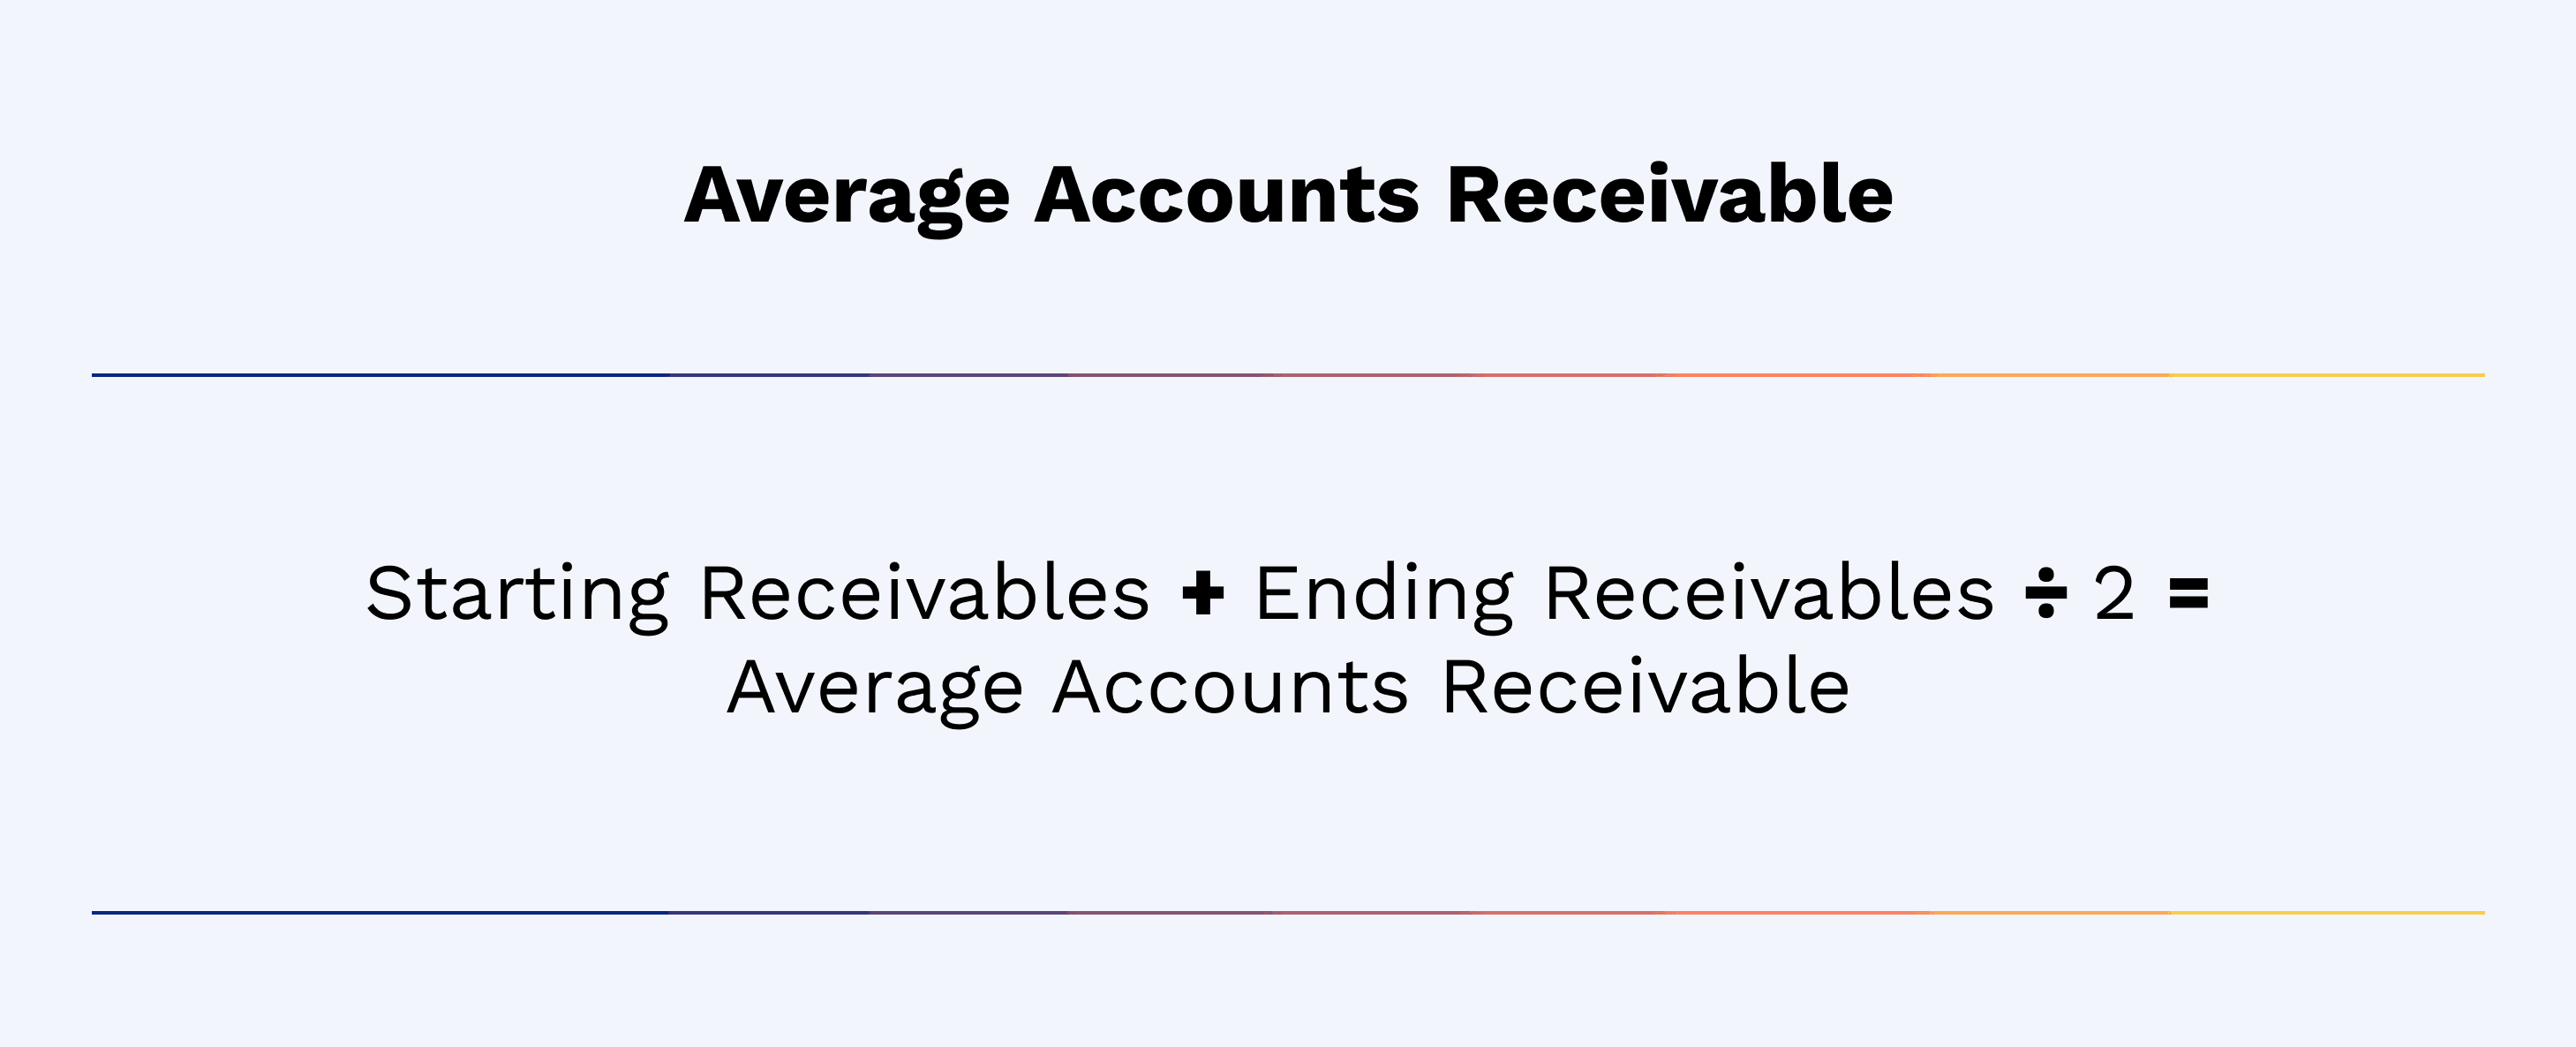 (Starting Receivables + Ending Receivables) ÷ 2 = Average Accounts Receivable